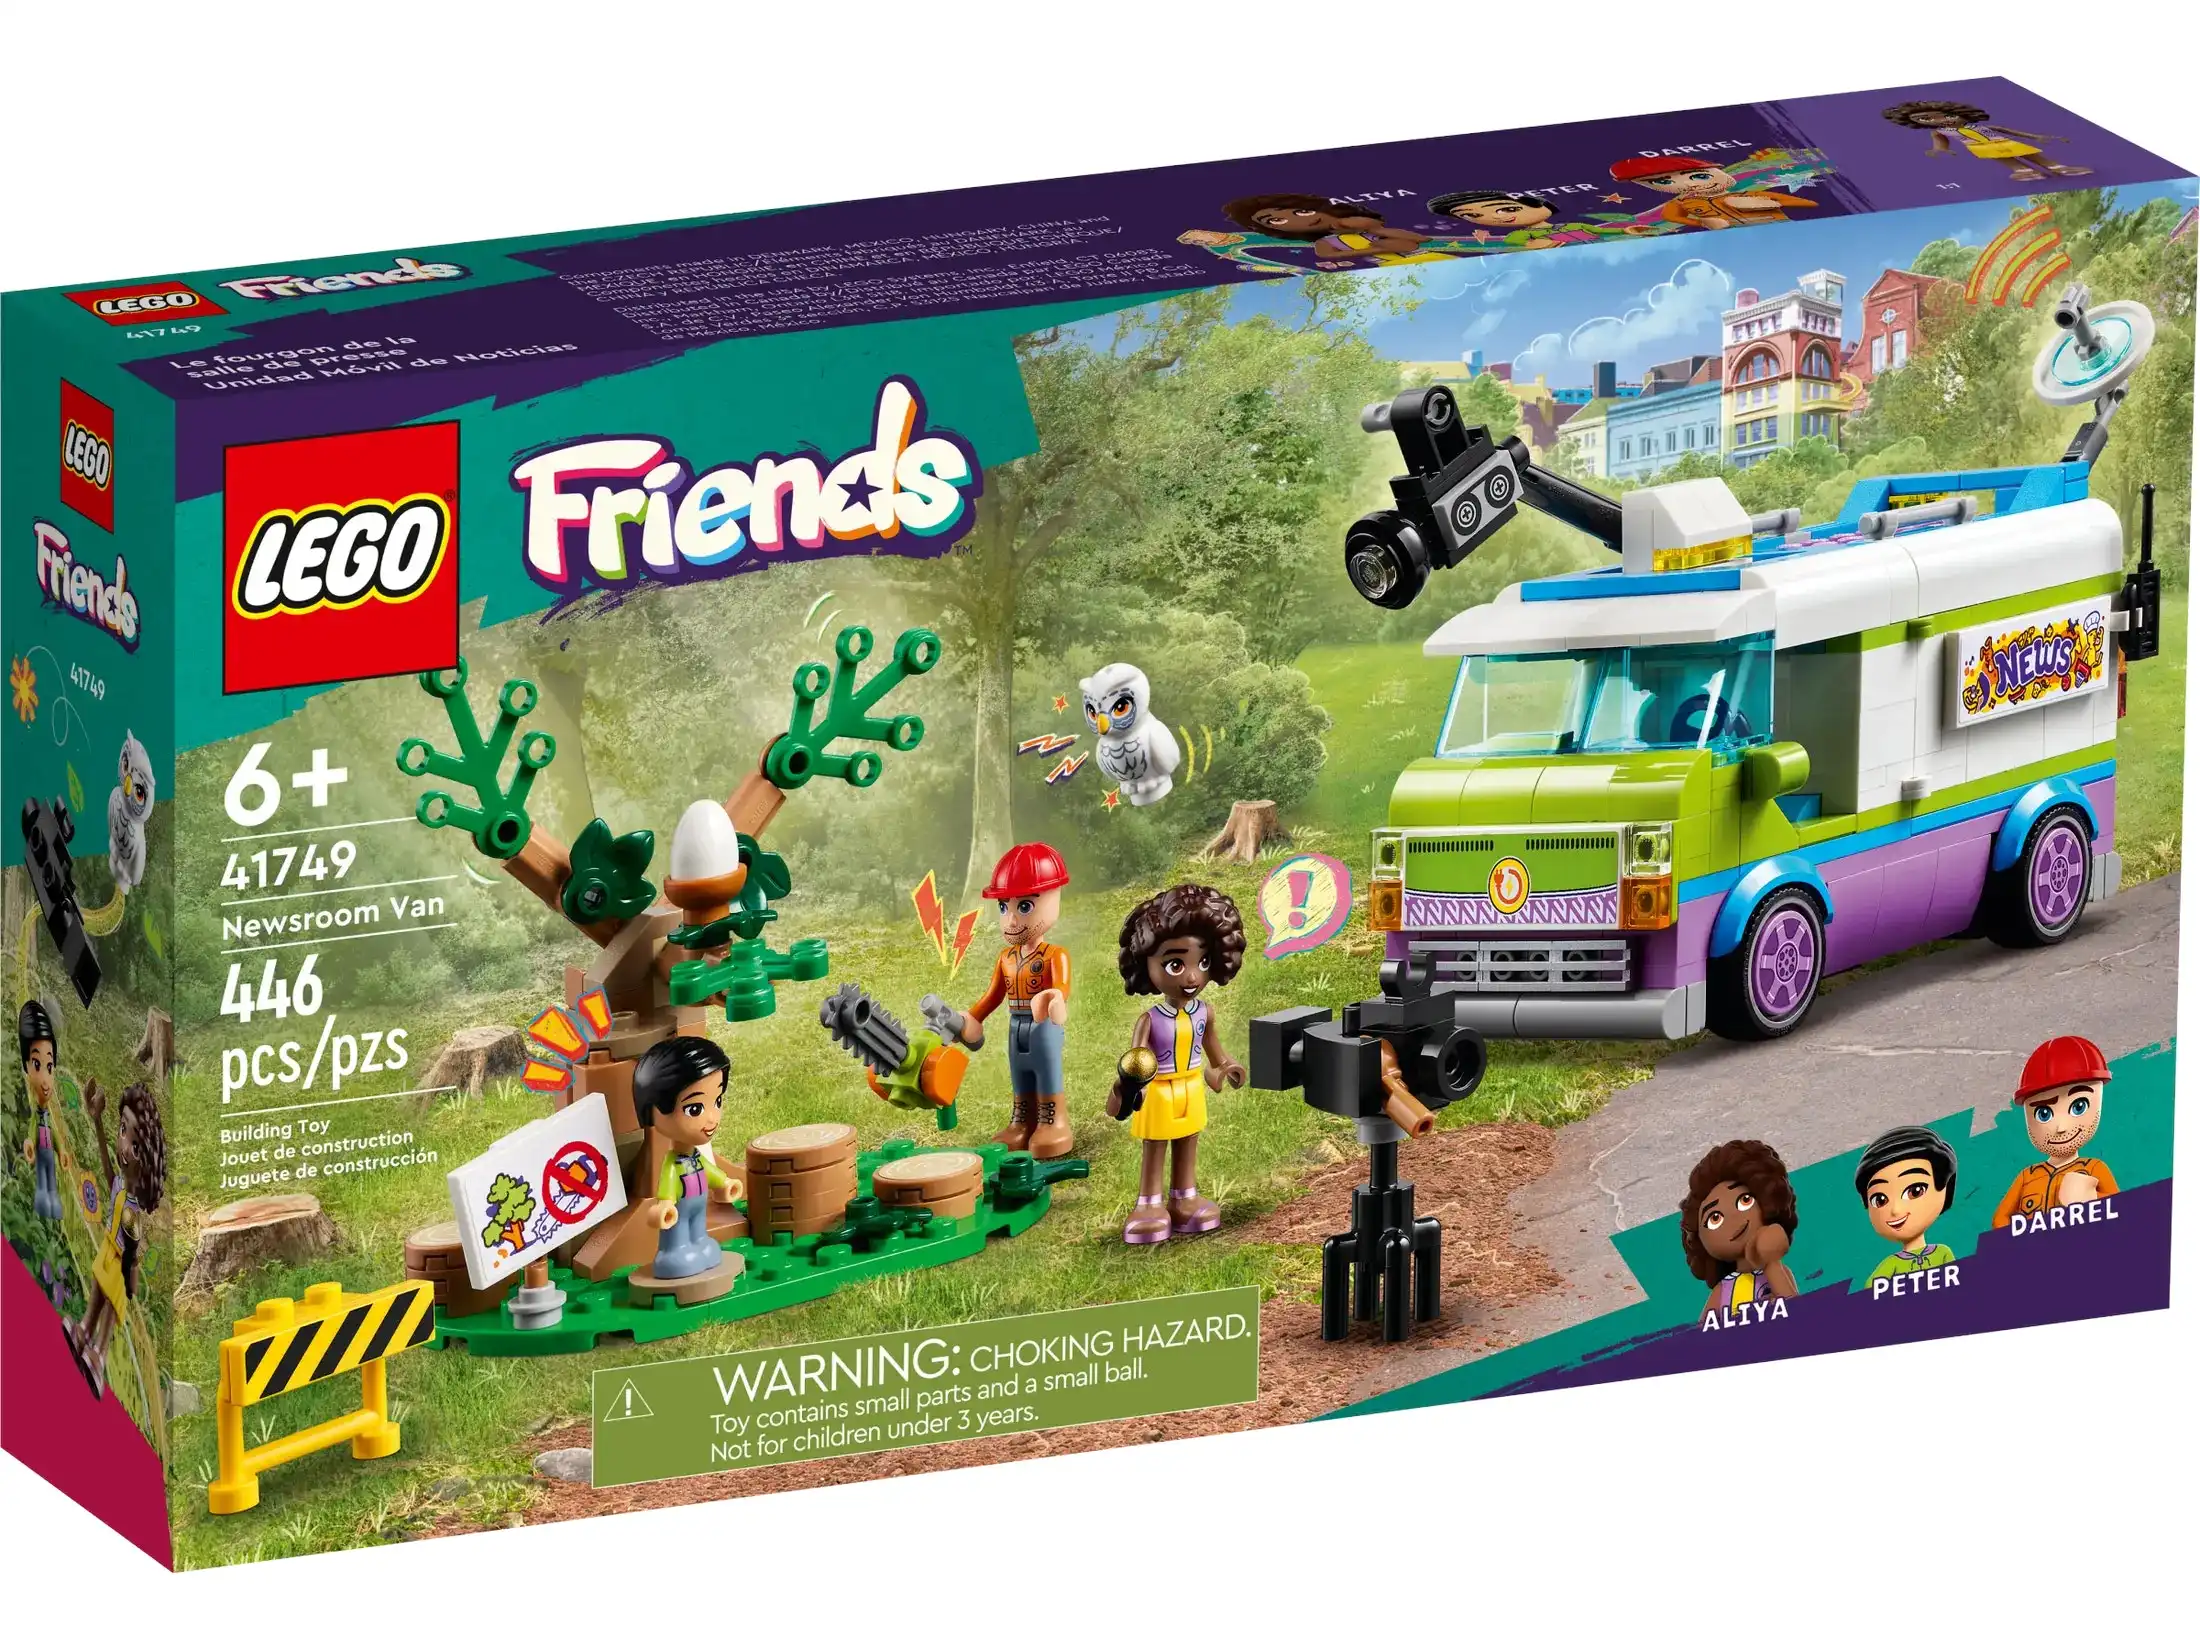 LEGO 41749 Newsroom Van - Friends